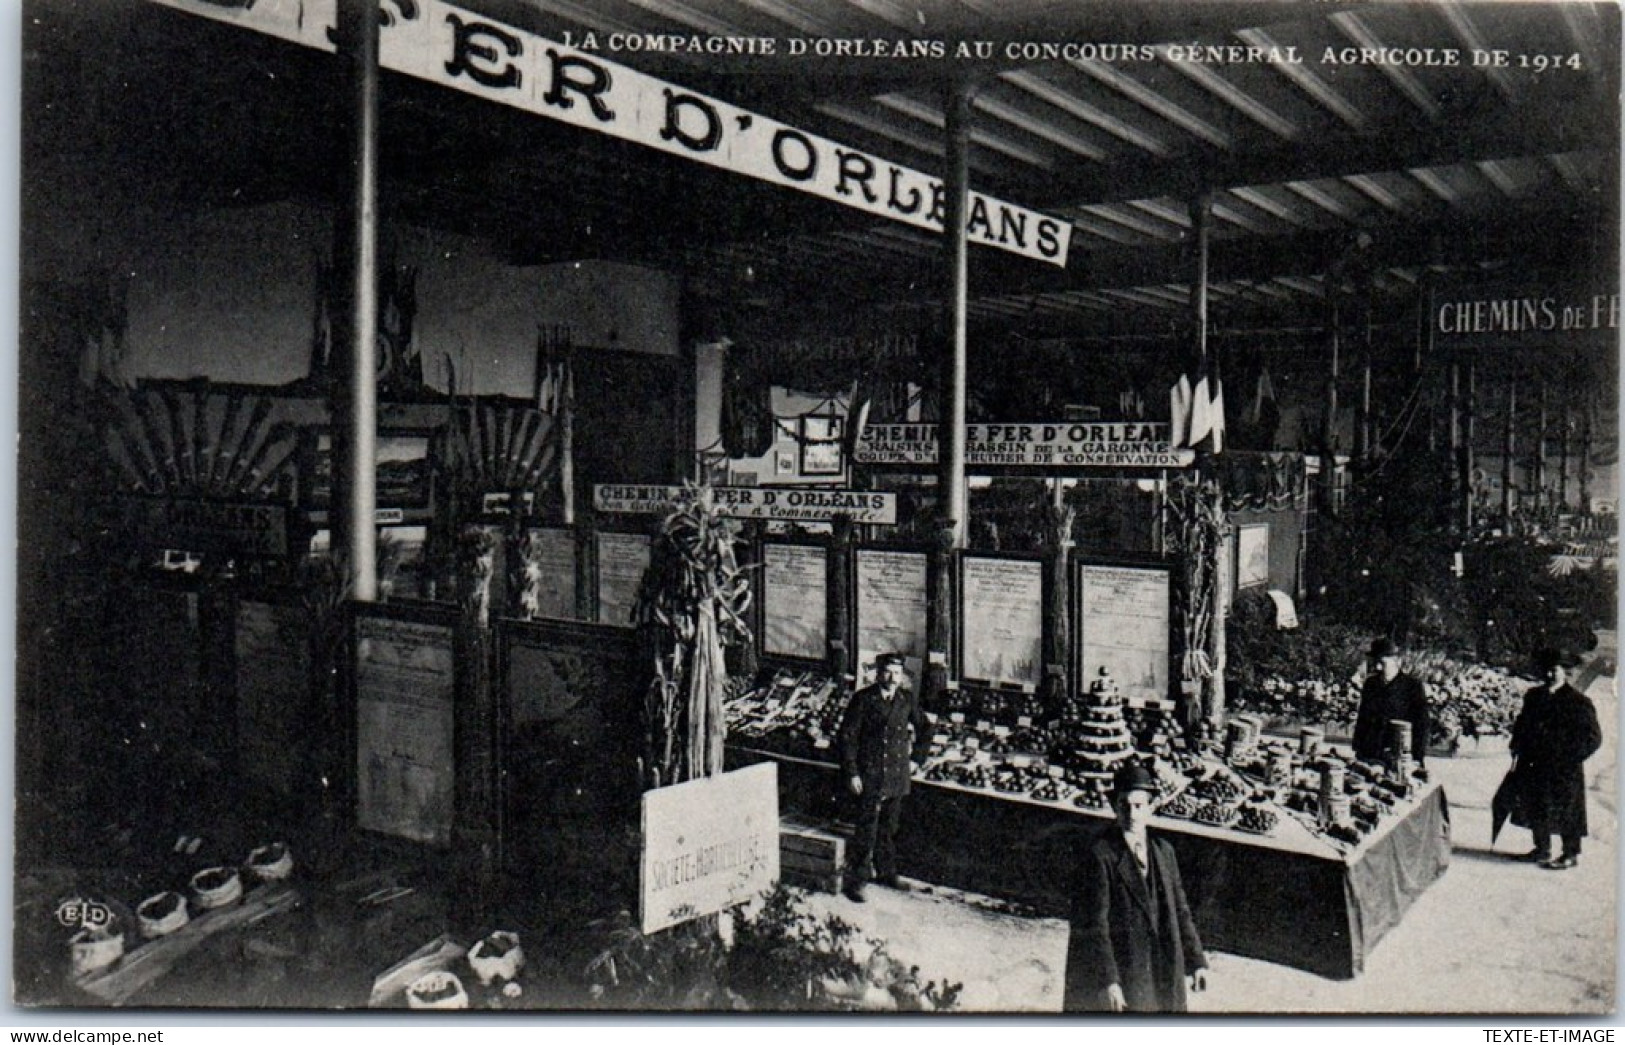 75 PARIS - Expo Agricole De 1914, Cie D'orleans Les Stands  - Expositions